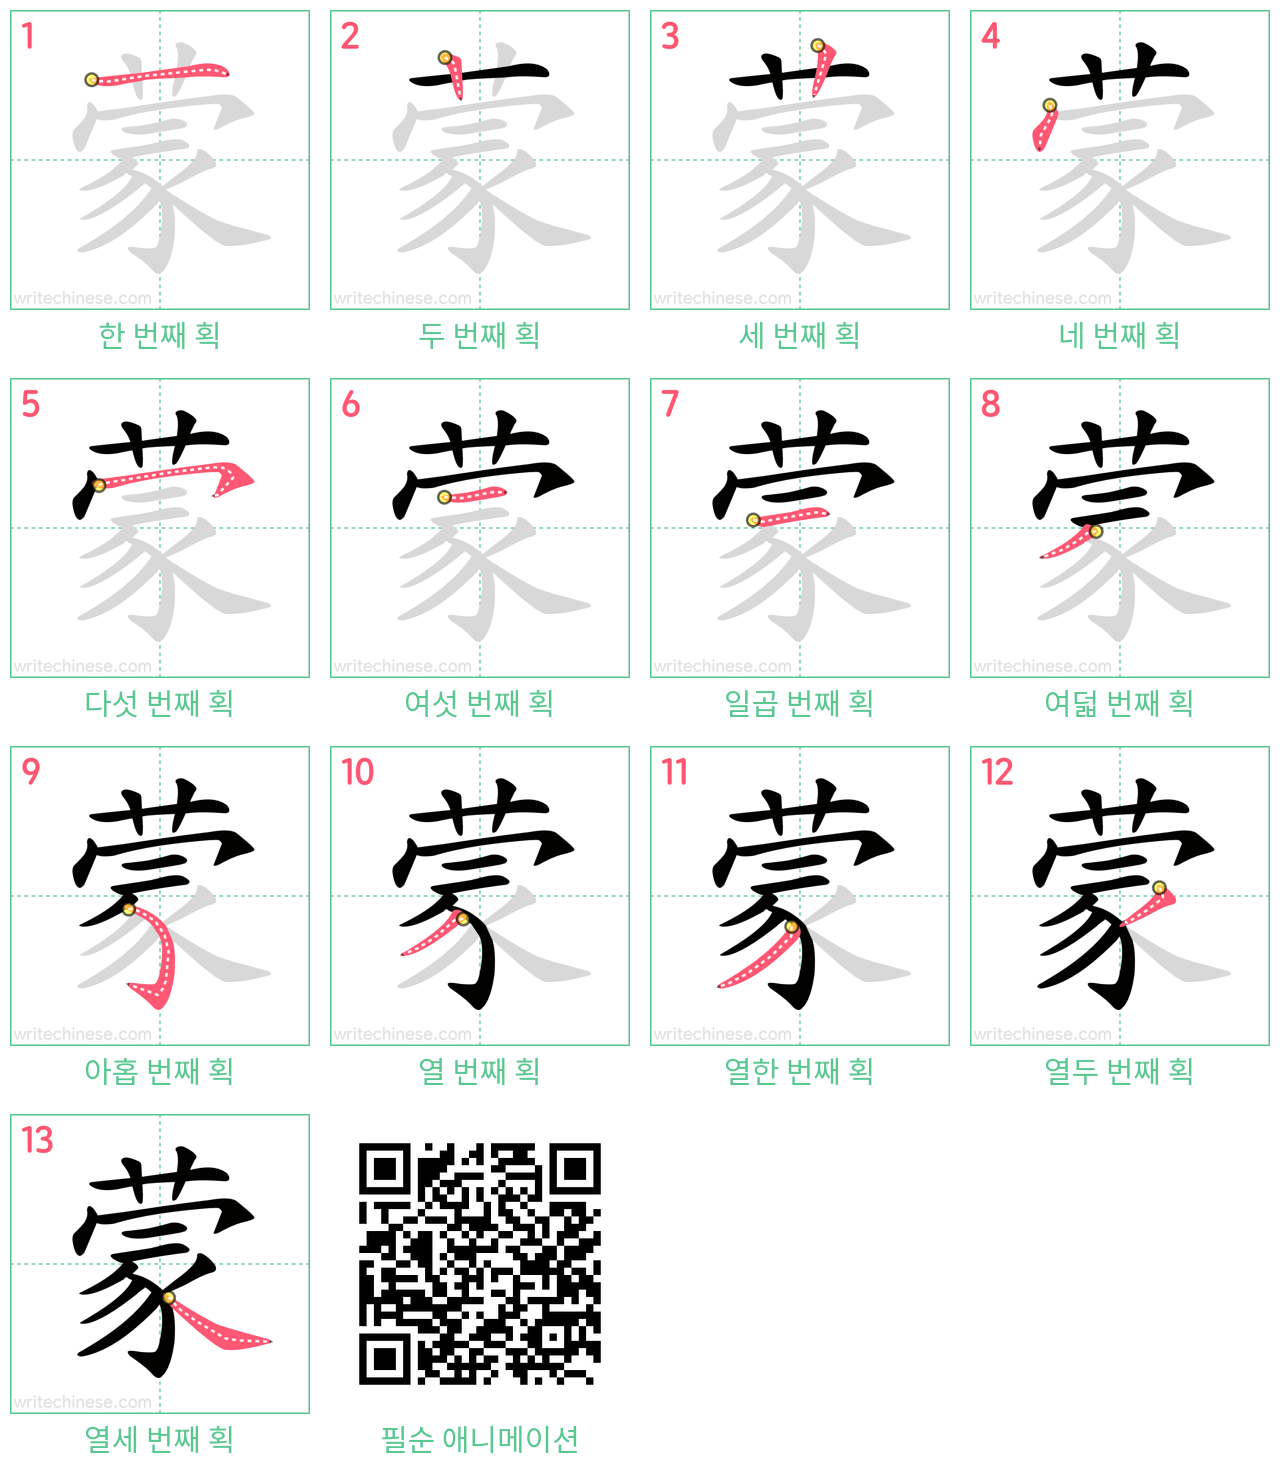 蒙 step-by-step stroke order diagrams